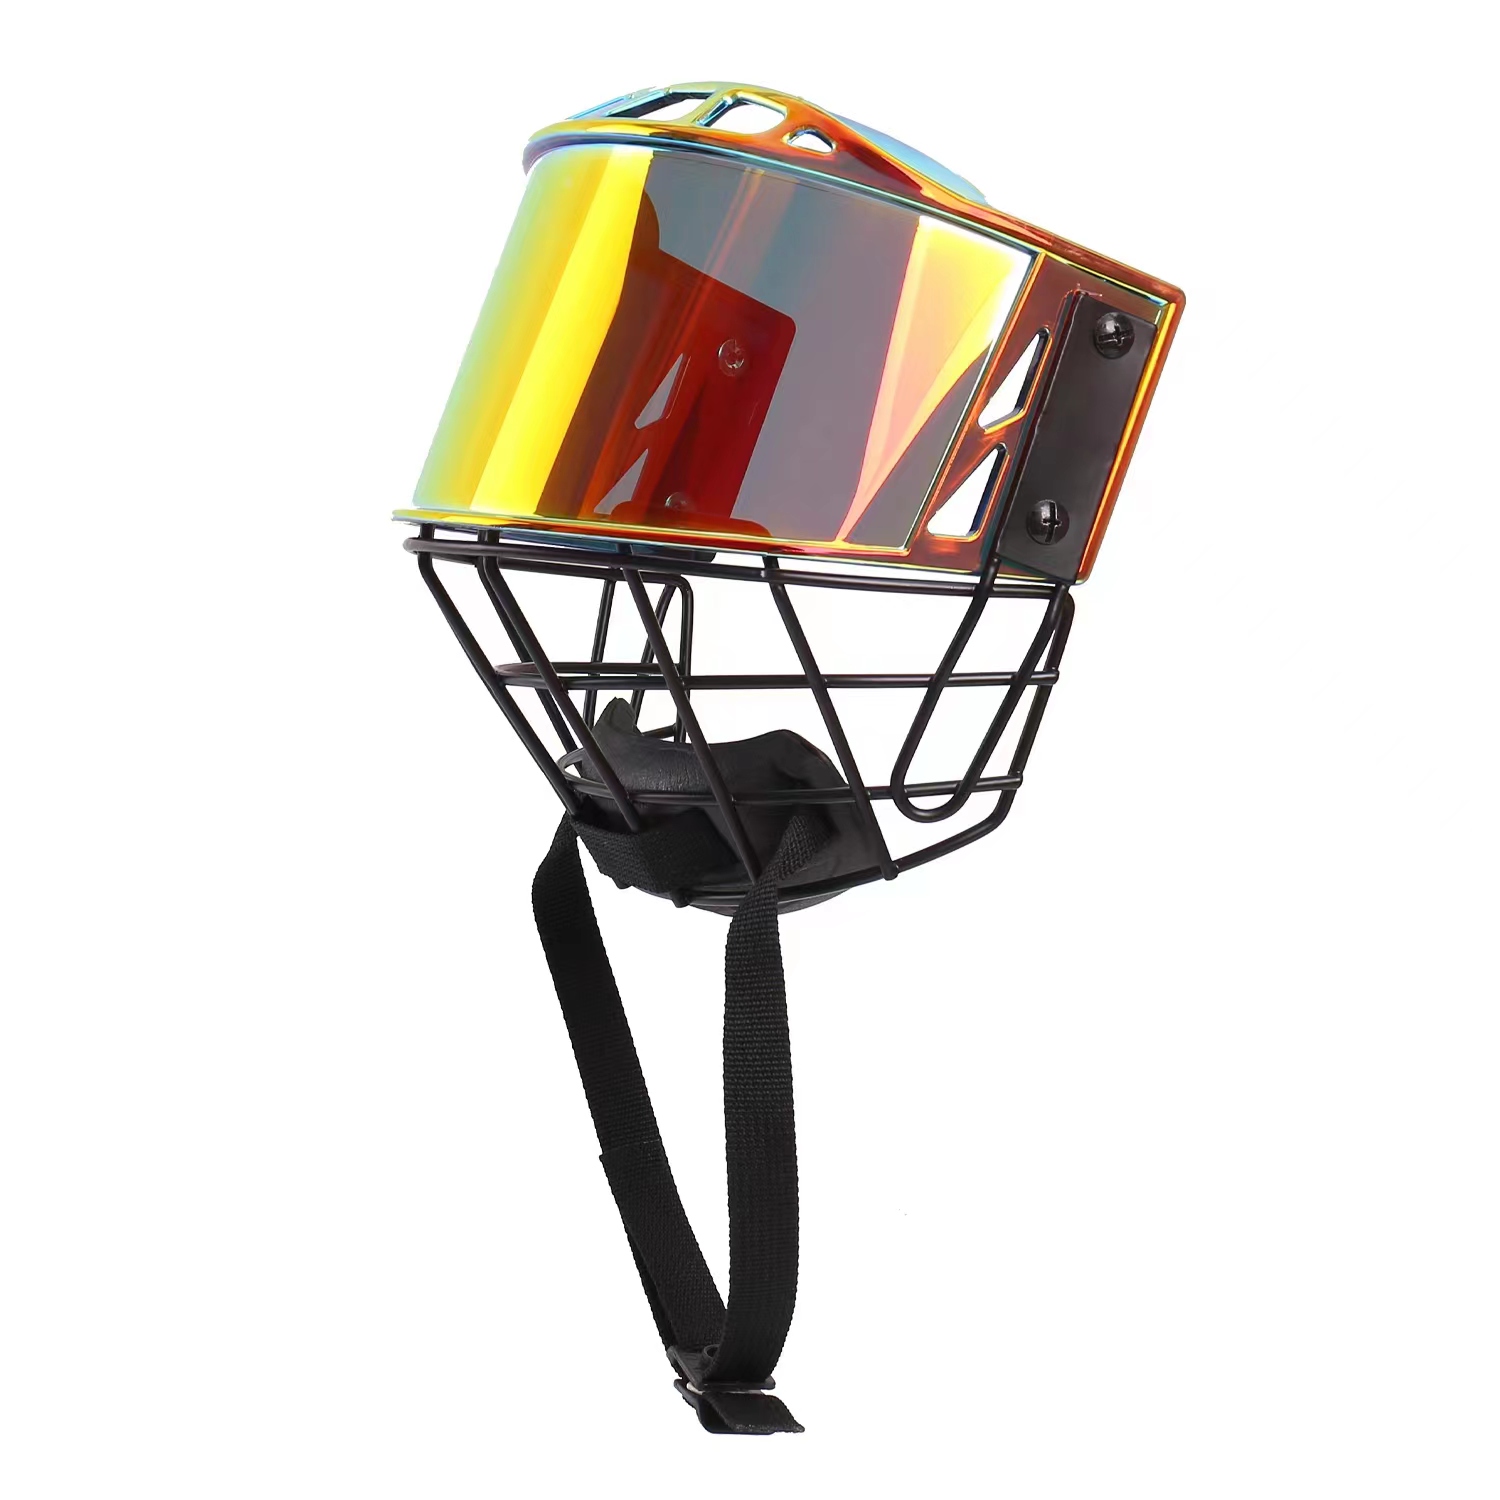 Roter hochfester Eishockey-Helmkäfig für Hockeyspieler